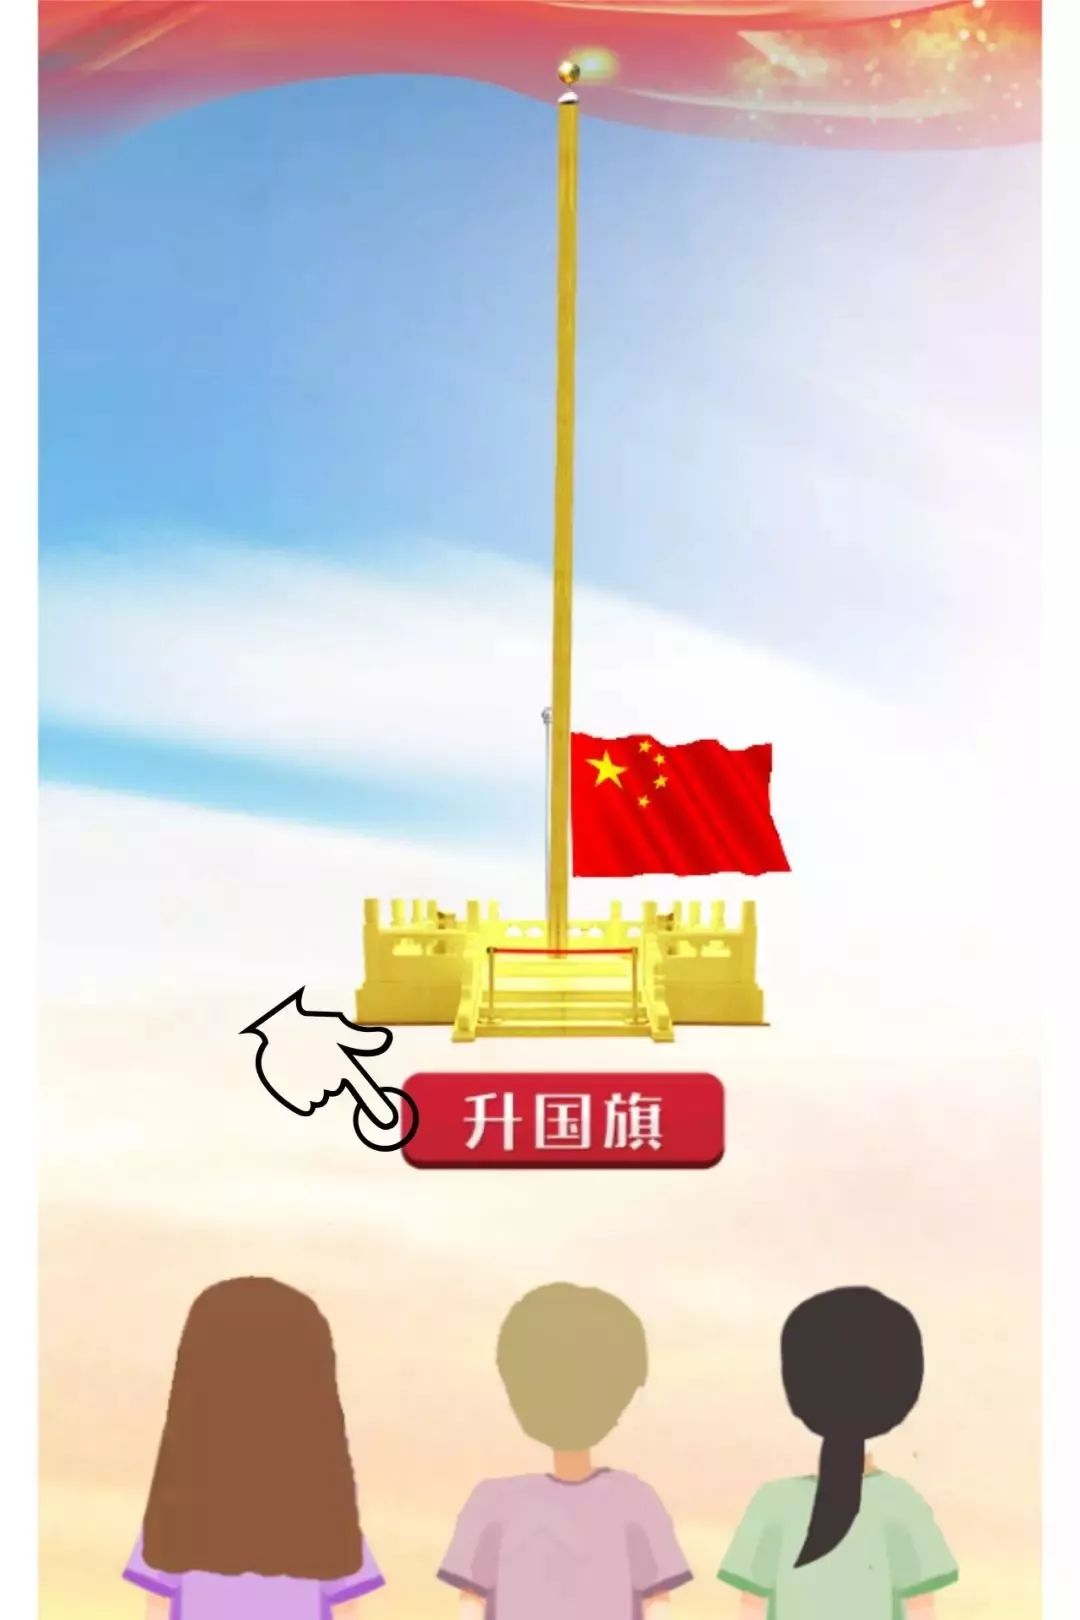 忆往昔,峥嵘岁月 向国旗敬礼 向祖国告白 我爱你中国!